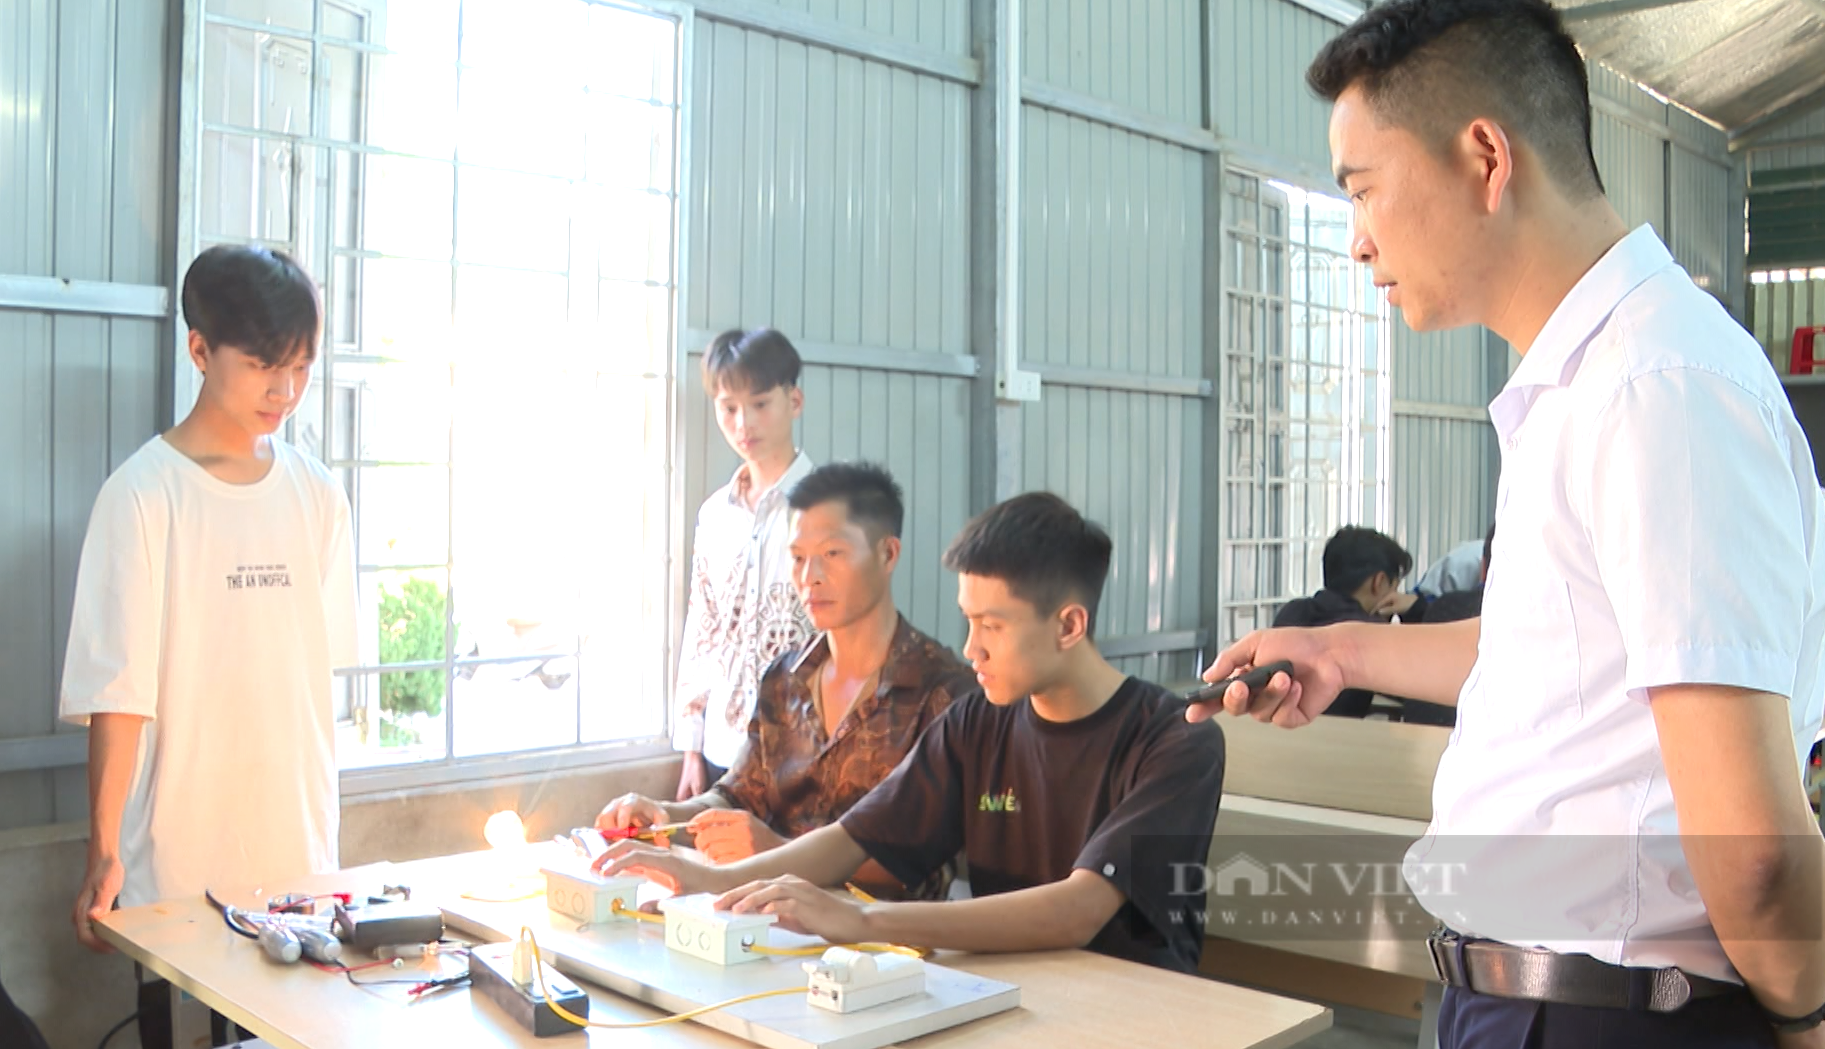 Đào tạo nghề cho lao động nông thôn ở Lai Châu, một giải pháp căn cơ để giảm nghèo - Ảnh 3.